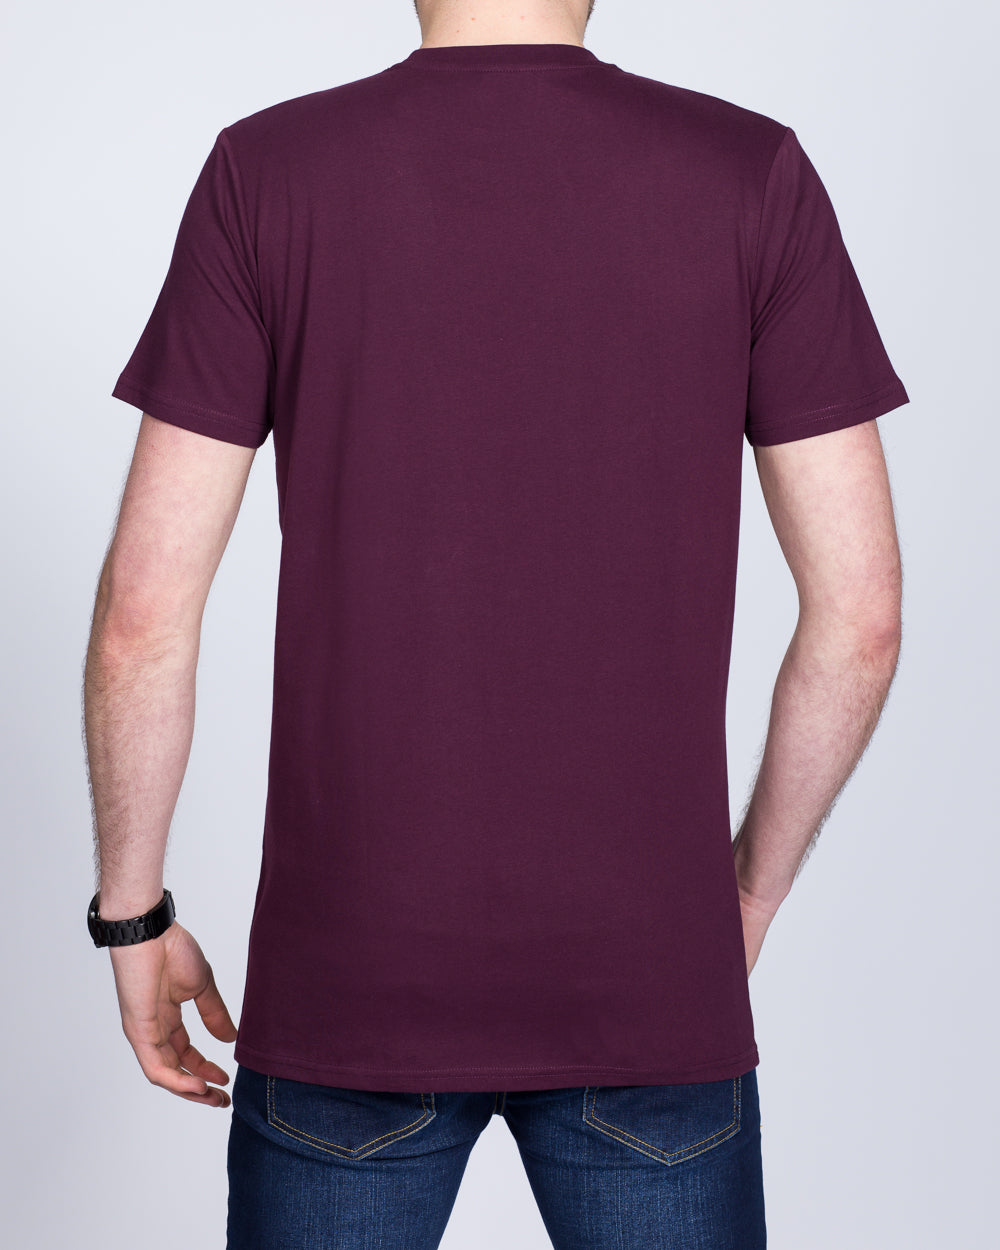 Girav Sydney Extra Tall T-Shirt (bordeaux)